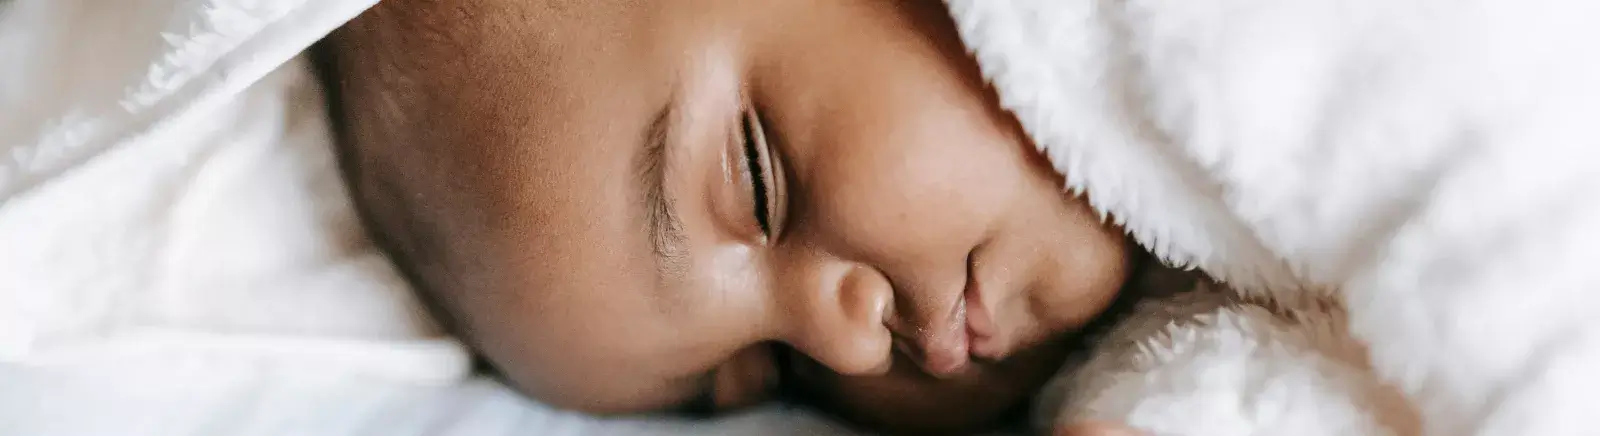 Le sommeil de bébé en toute sécurité : berceau, gigoteuse, comment